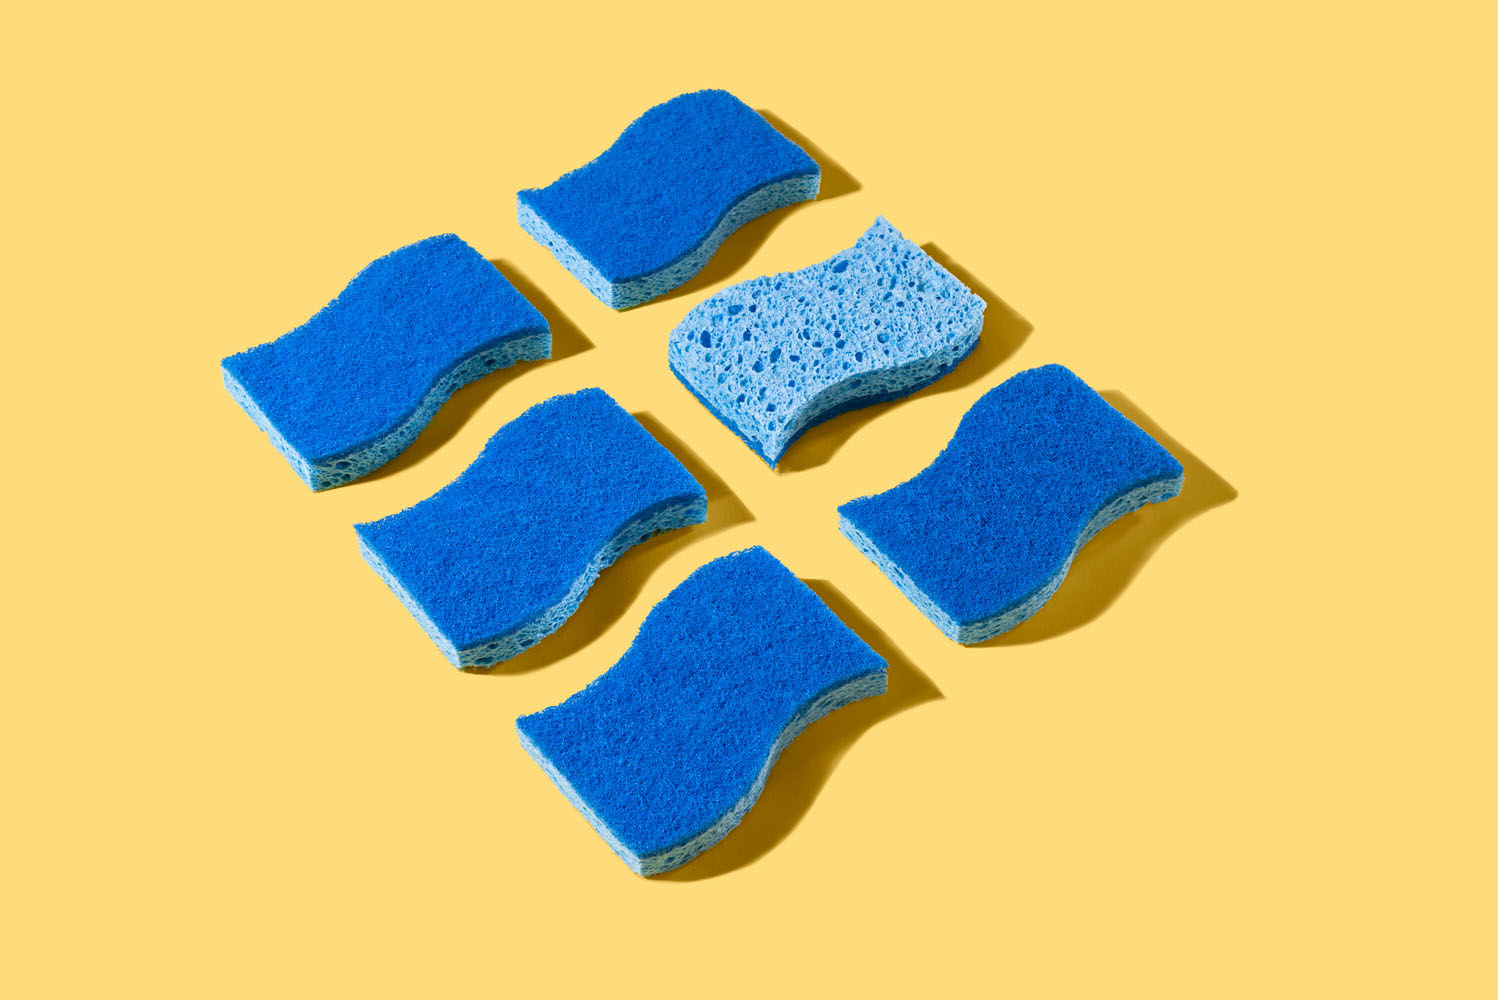 the blue sponges